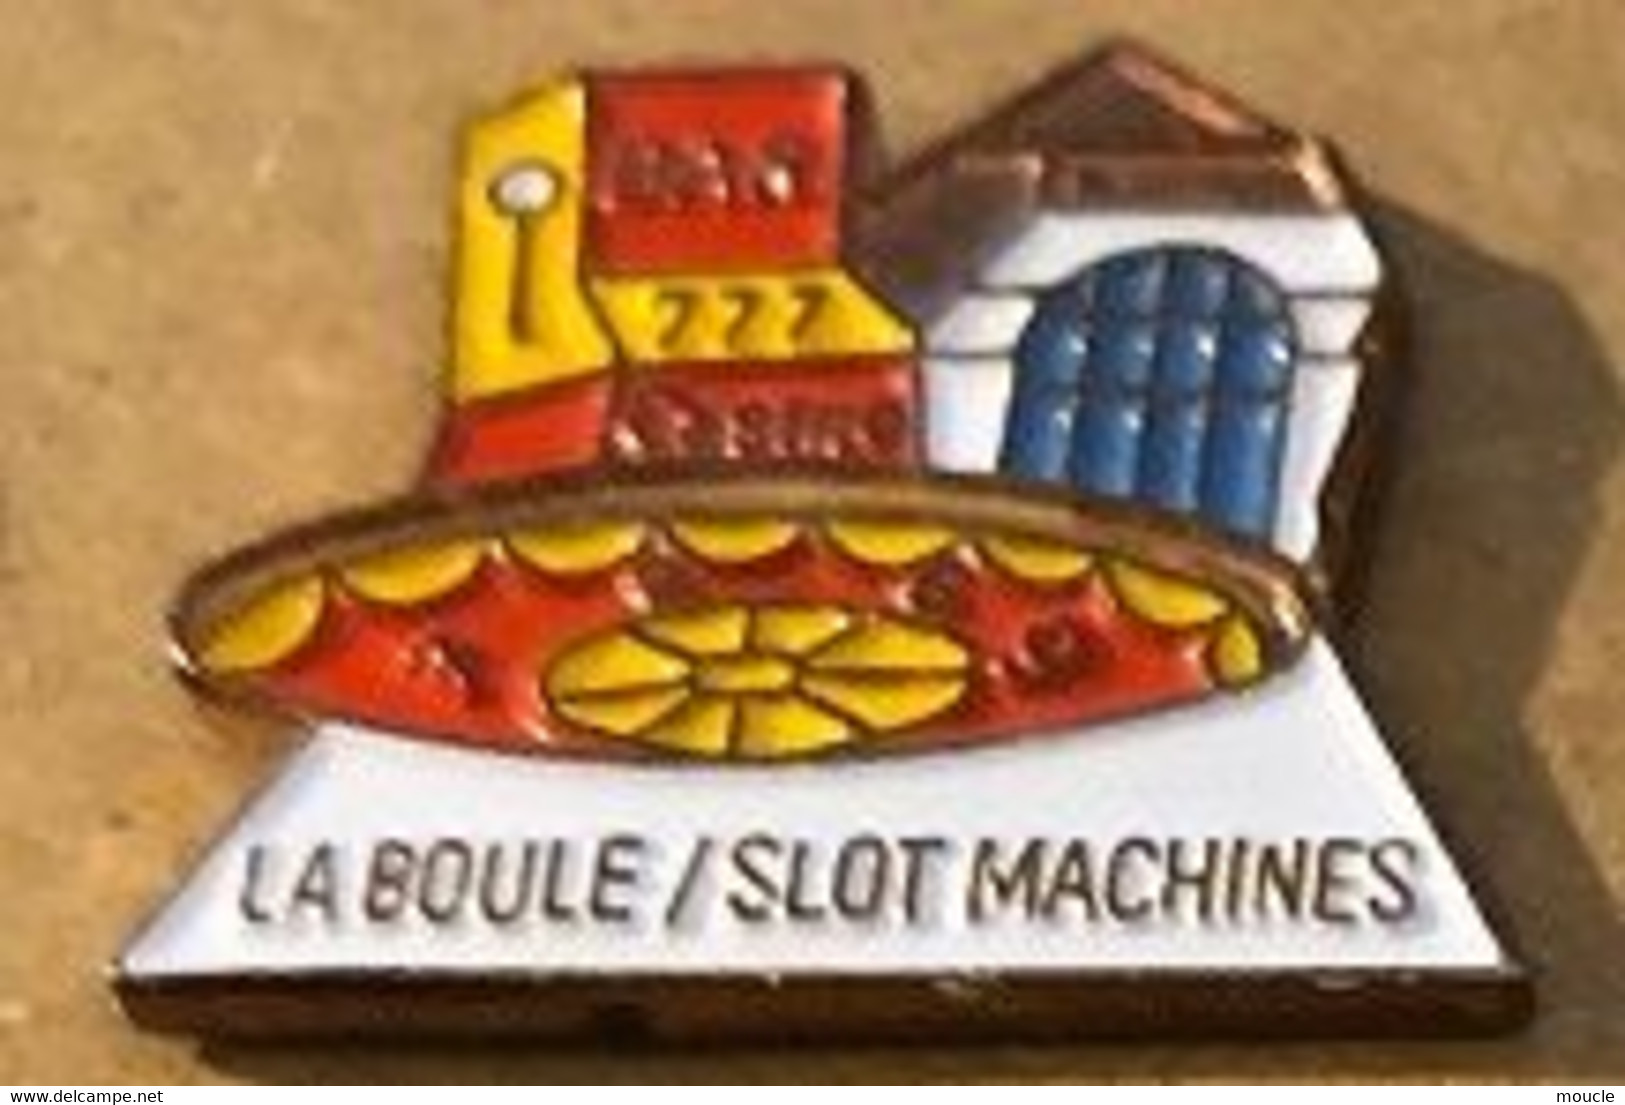 LA BOULE / SLOT MACHINES - BANDIT MANCHOT - CASINO - ROULETTE  - BAR - MACHINE A SOUS - MONEY - ARGENT - GELD -    (16) - Games